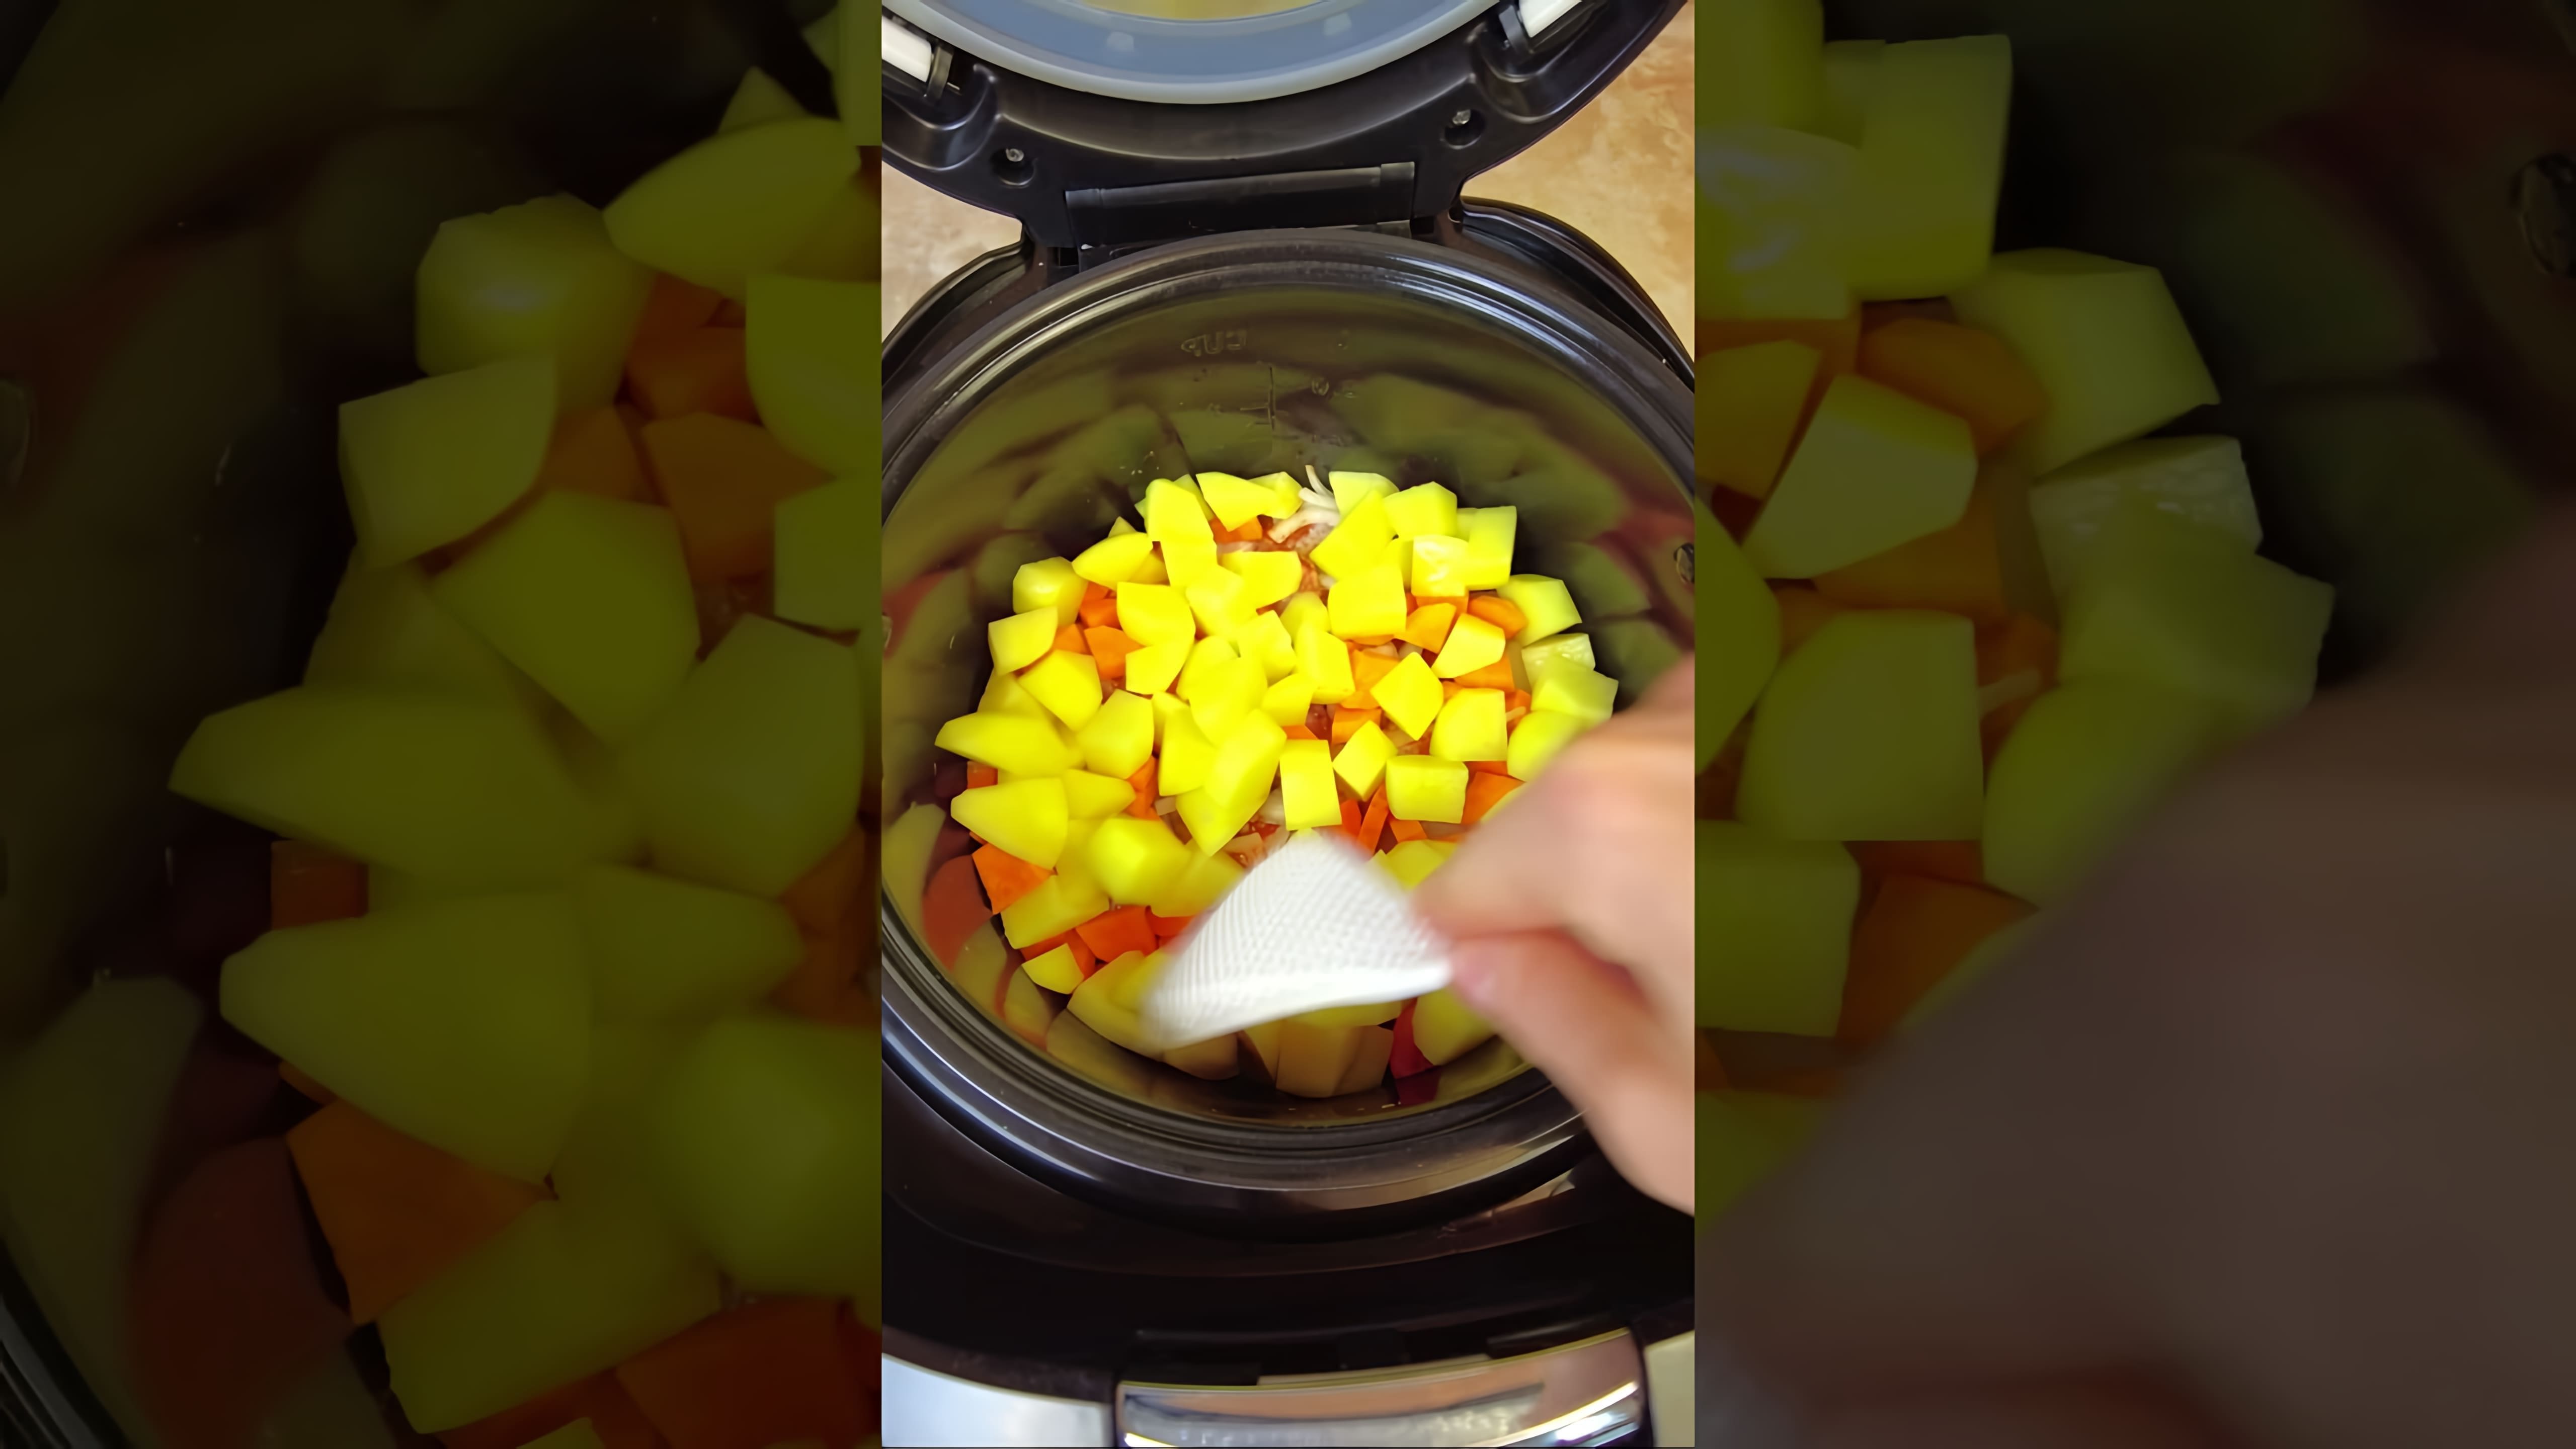 В этом видео демонстрируется процесс приготовления простого, но вкусного блюда - куриной голени с овощами в мультиварке